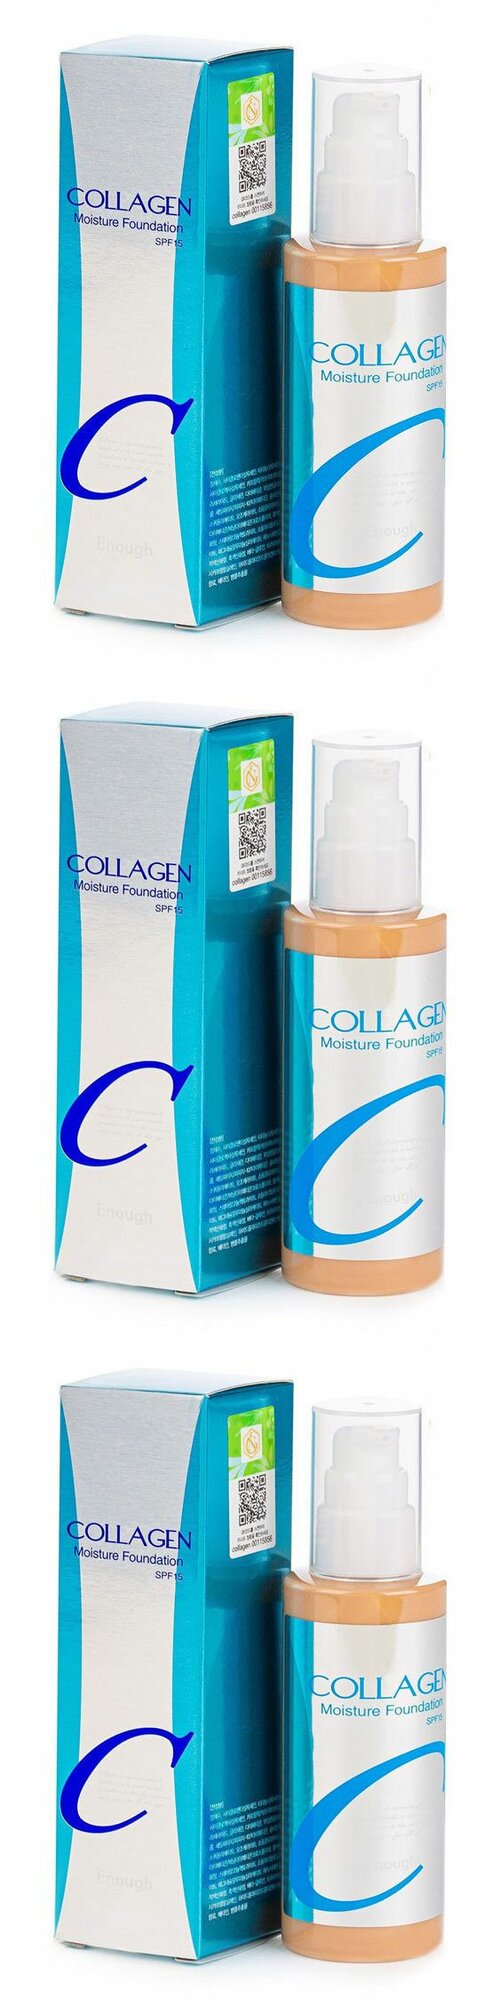 Enough Основа тональная Collagen Moisture Foundation, увлажняющая, с коллагеном, 3 шт.